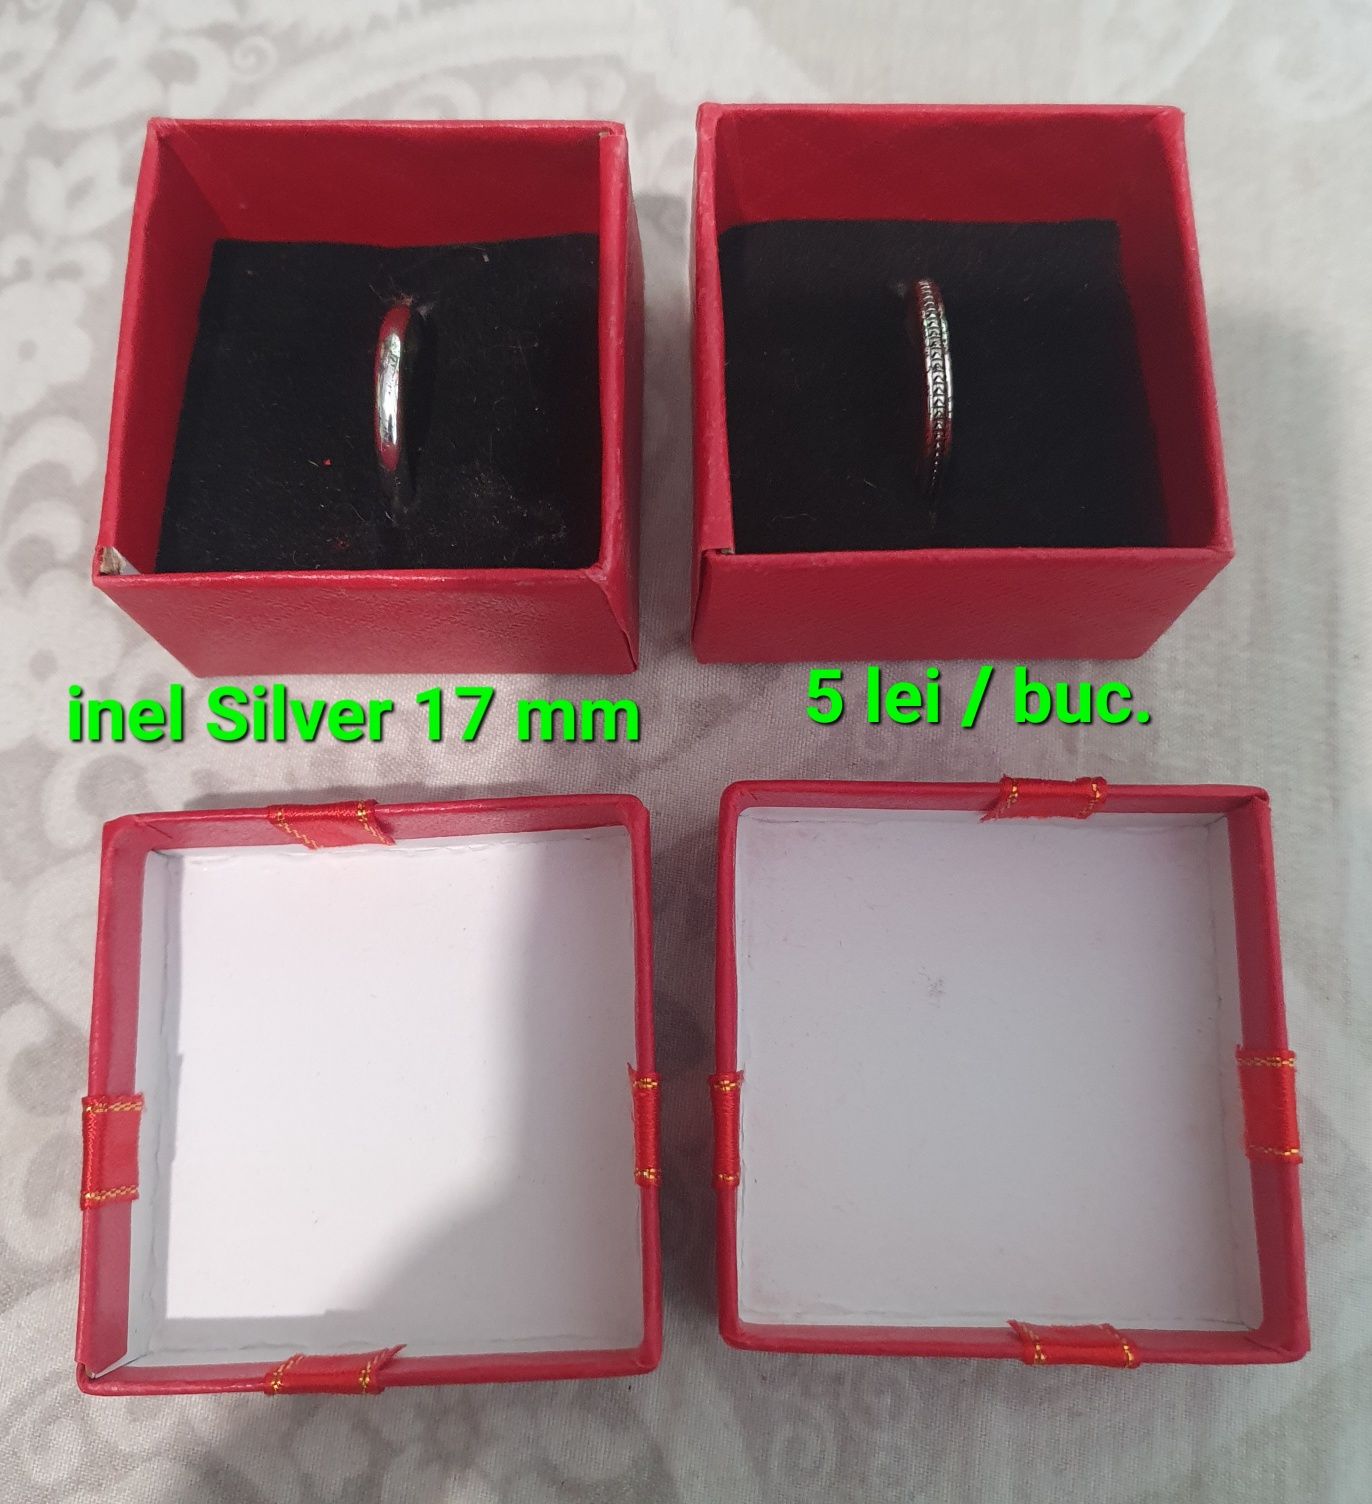 Inele Silver 17mm